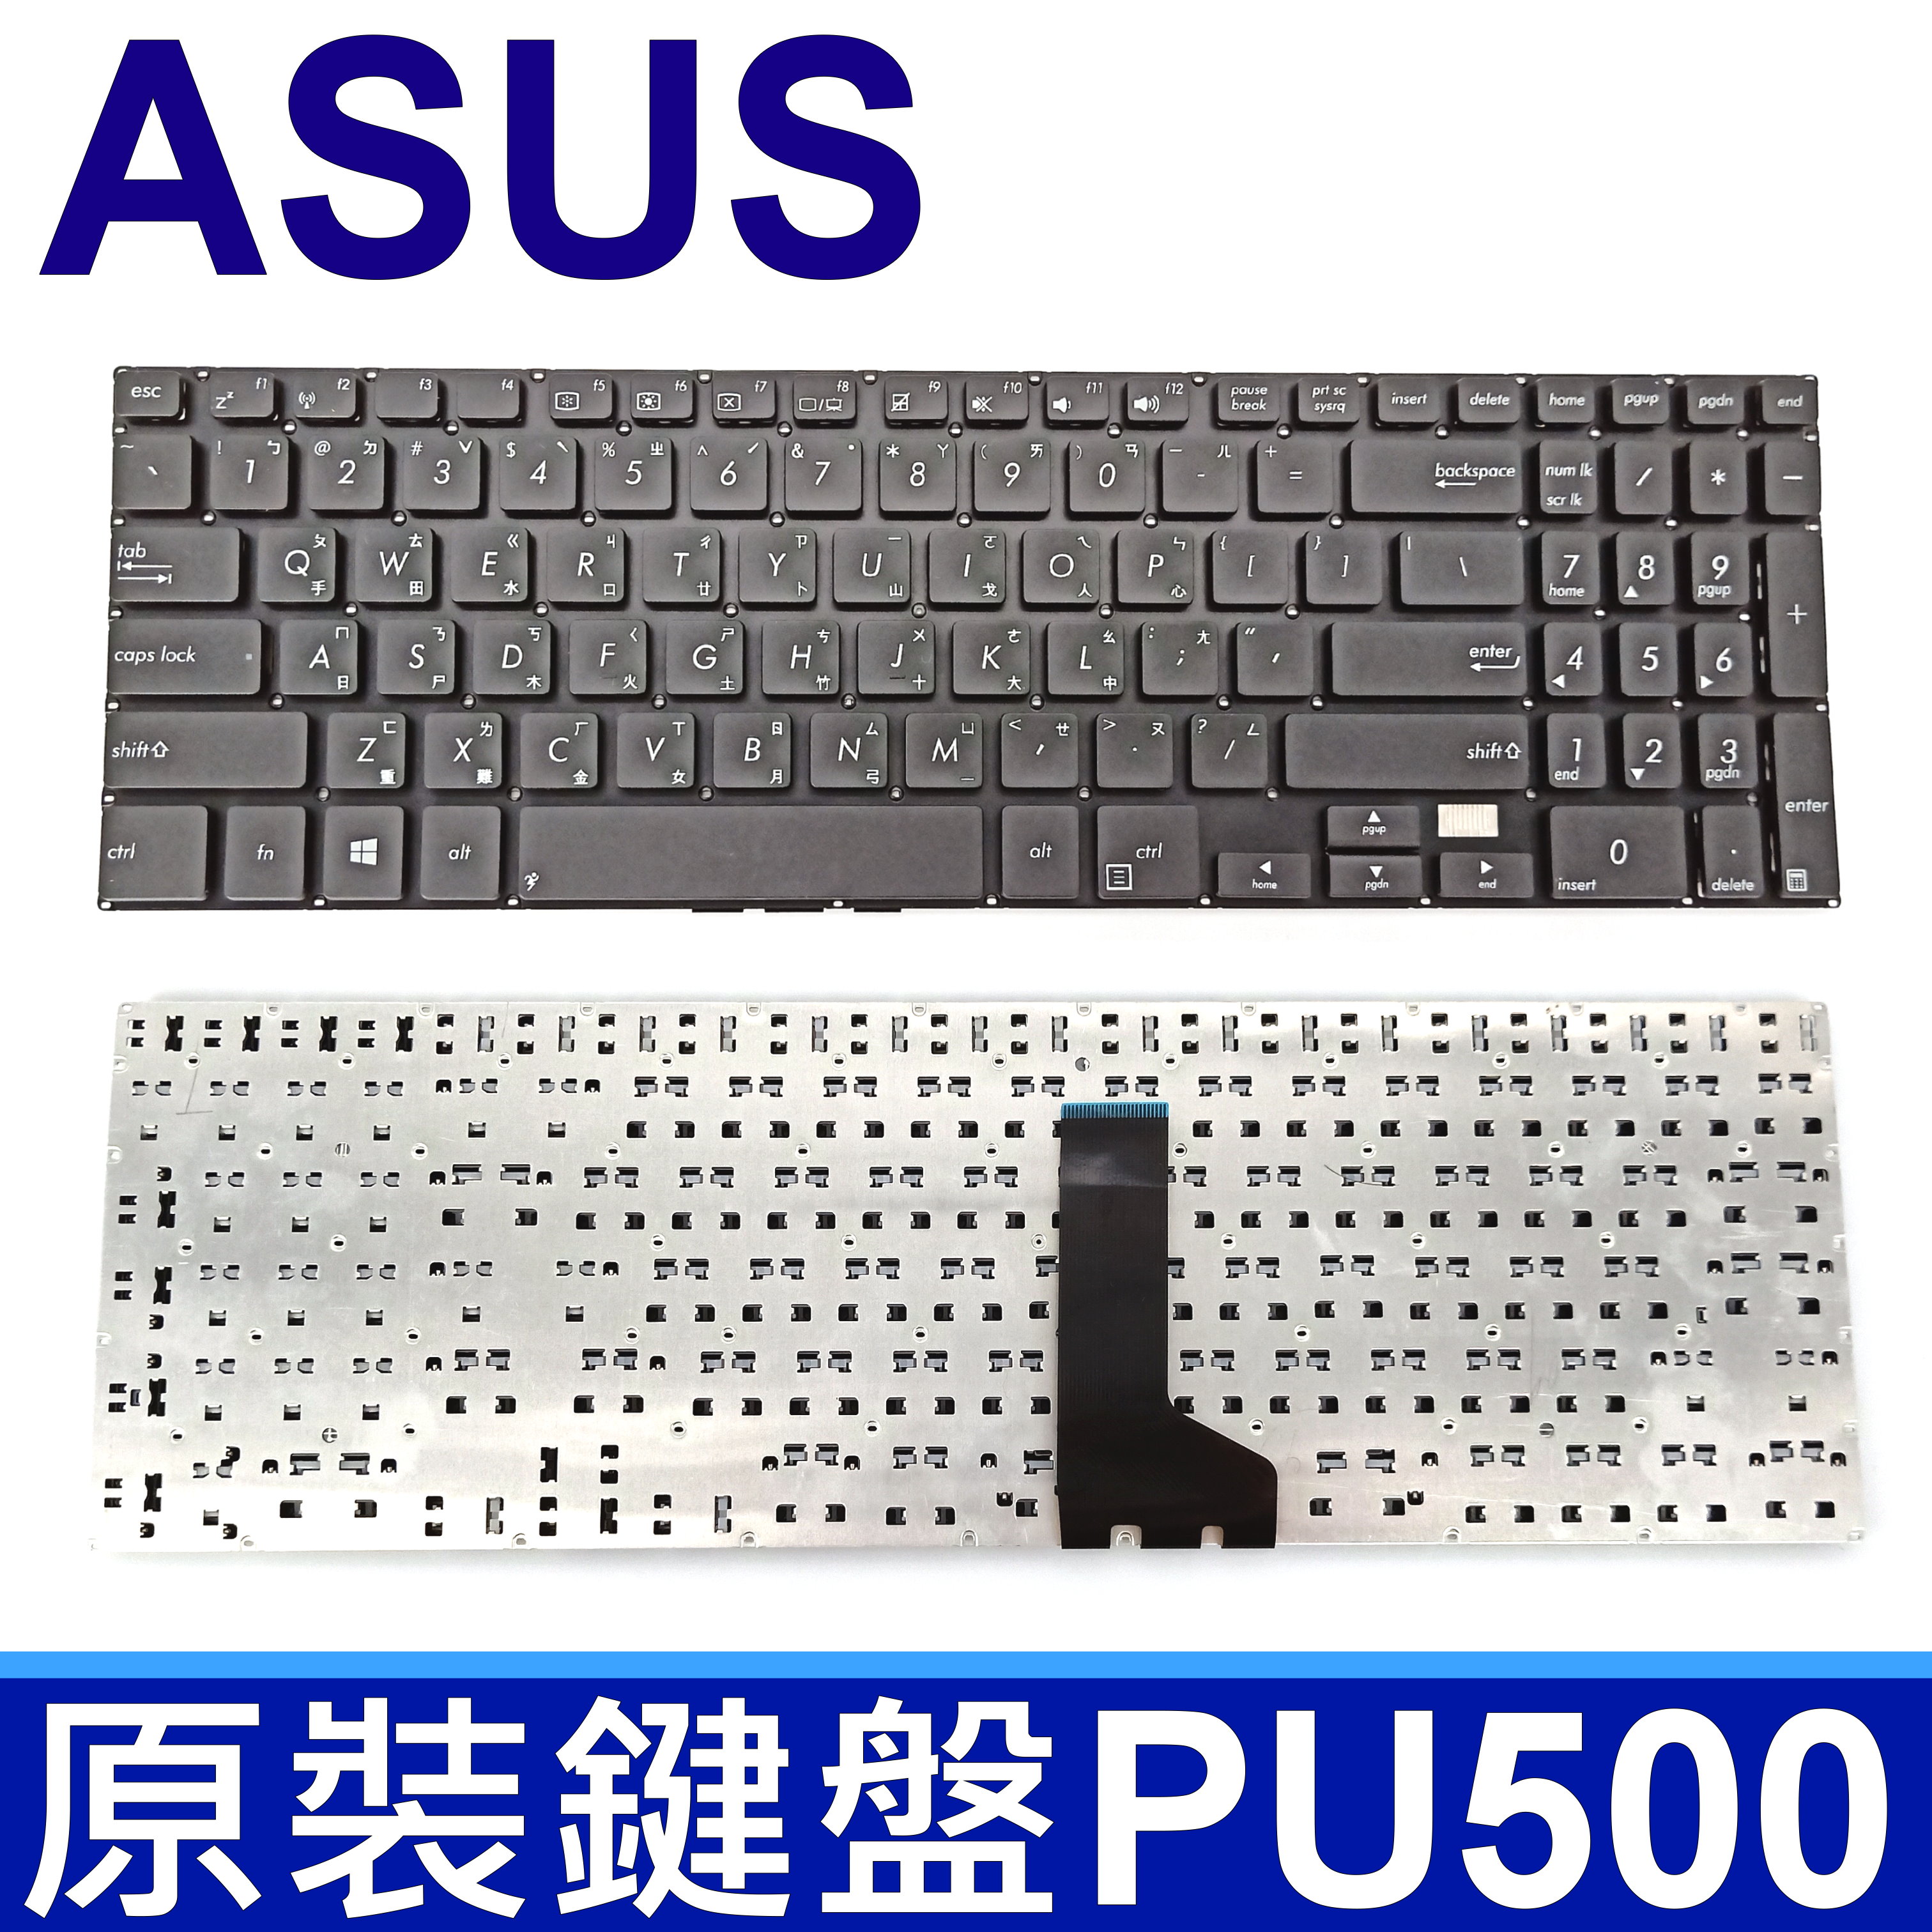 華碩 ASUS PU500 黑色 繁體中文 商用 鍵盤 Essential P500 P500C P500CA PU500CA PU550 PU550C PU550CA PU550L PU550LD PRO550L PU551LD PU551 PU551L PU551LA PU551J PU551JA PU551JD PU551JH PRO551 PRO551E PRO551L PRO551LD